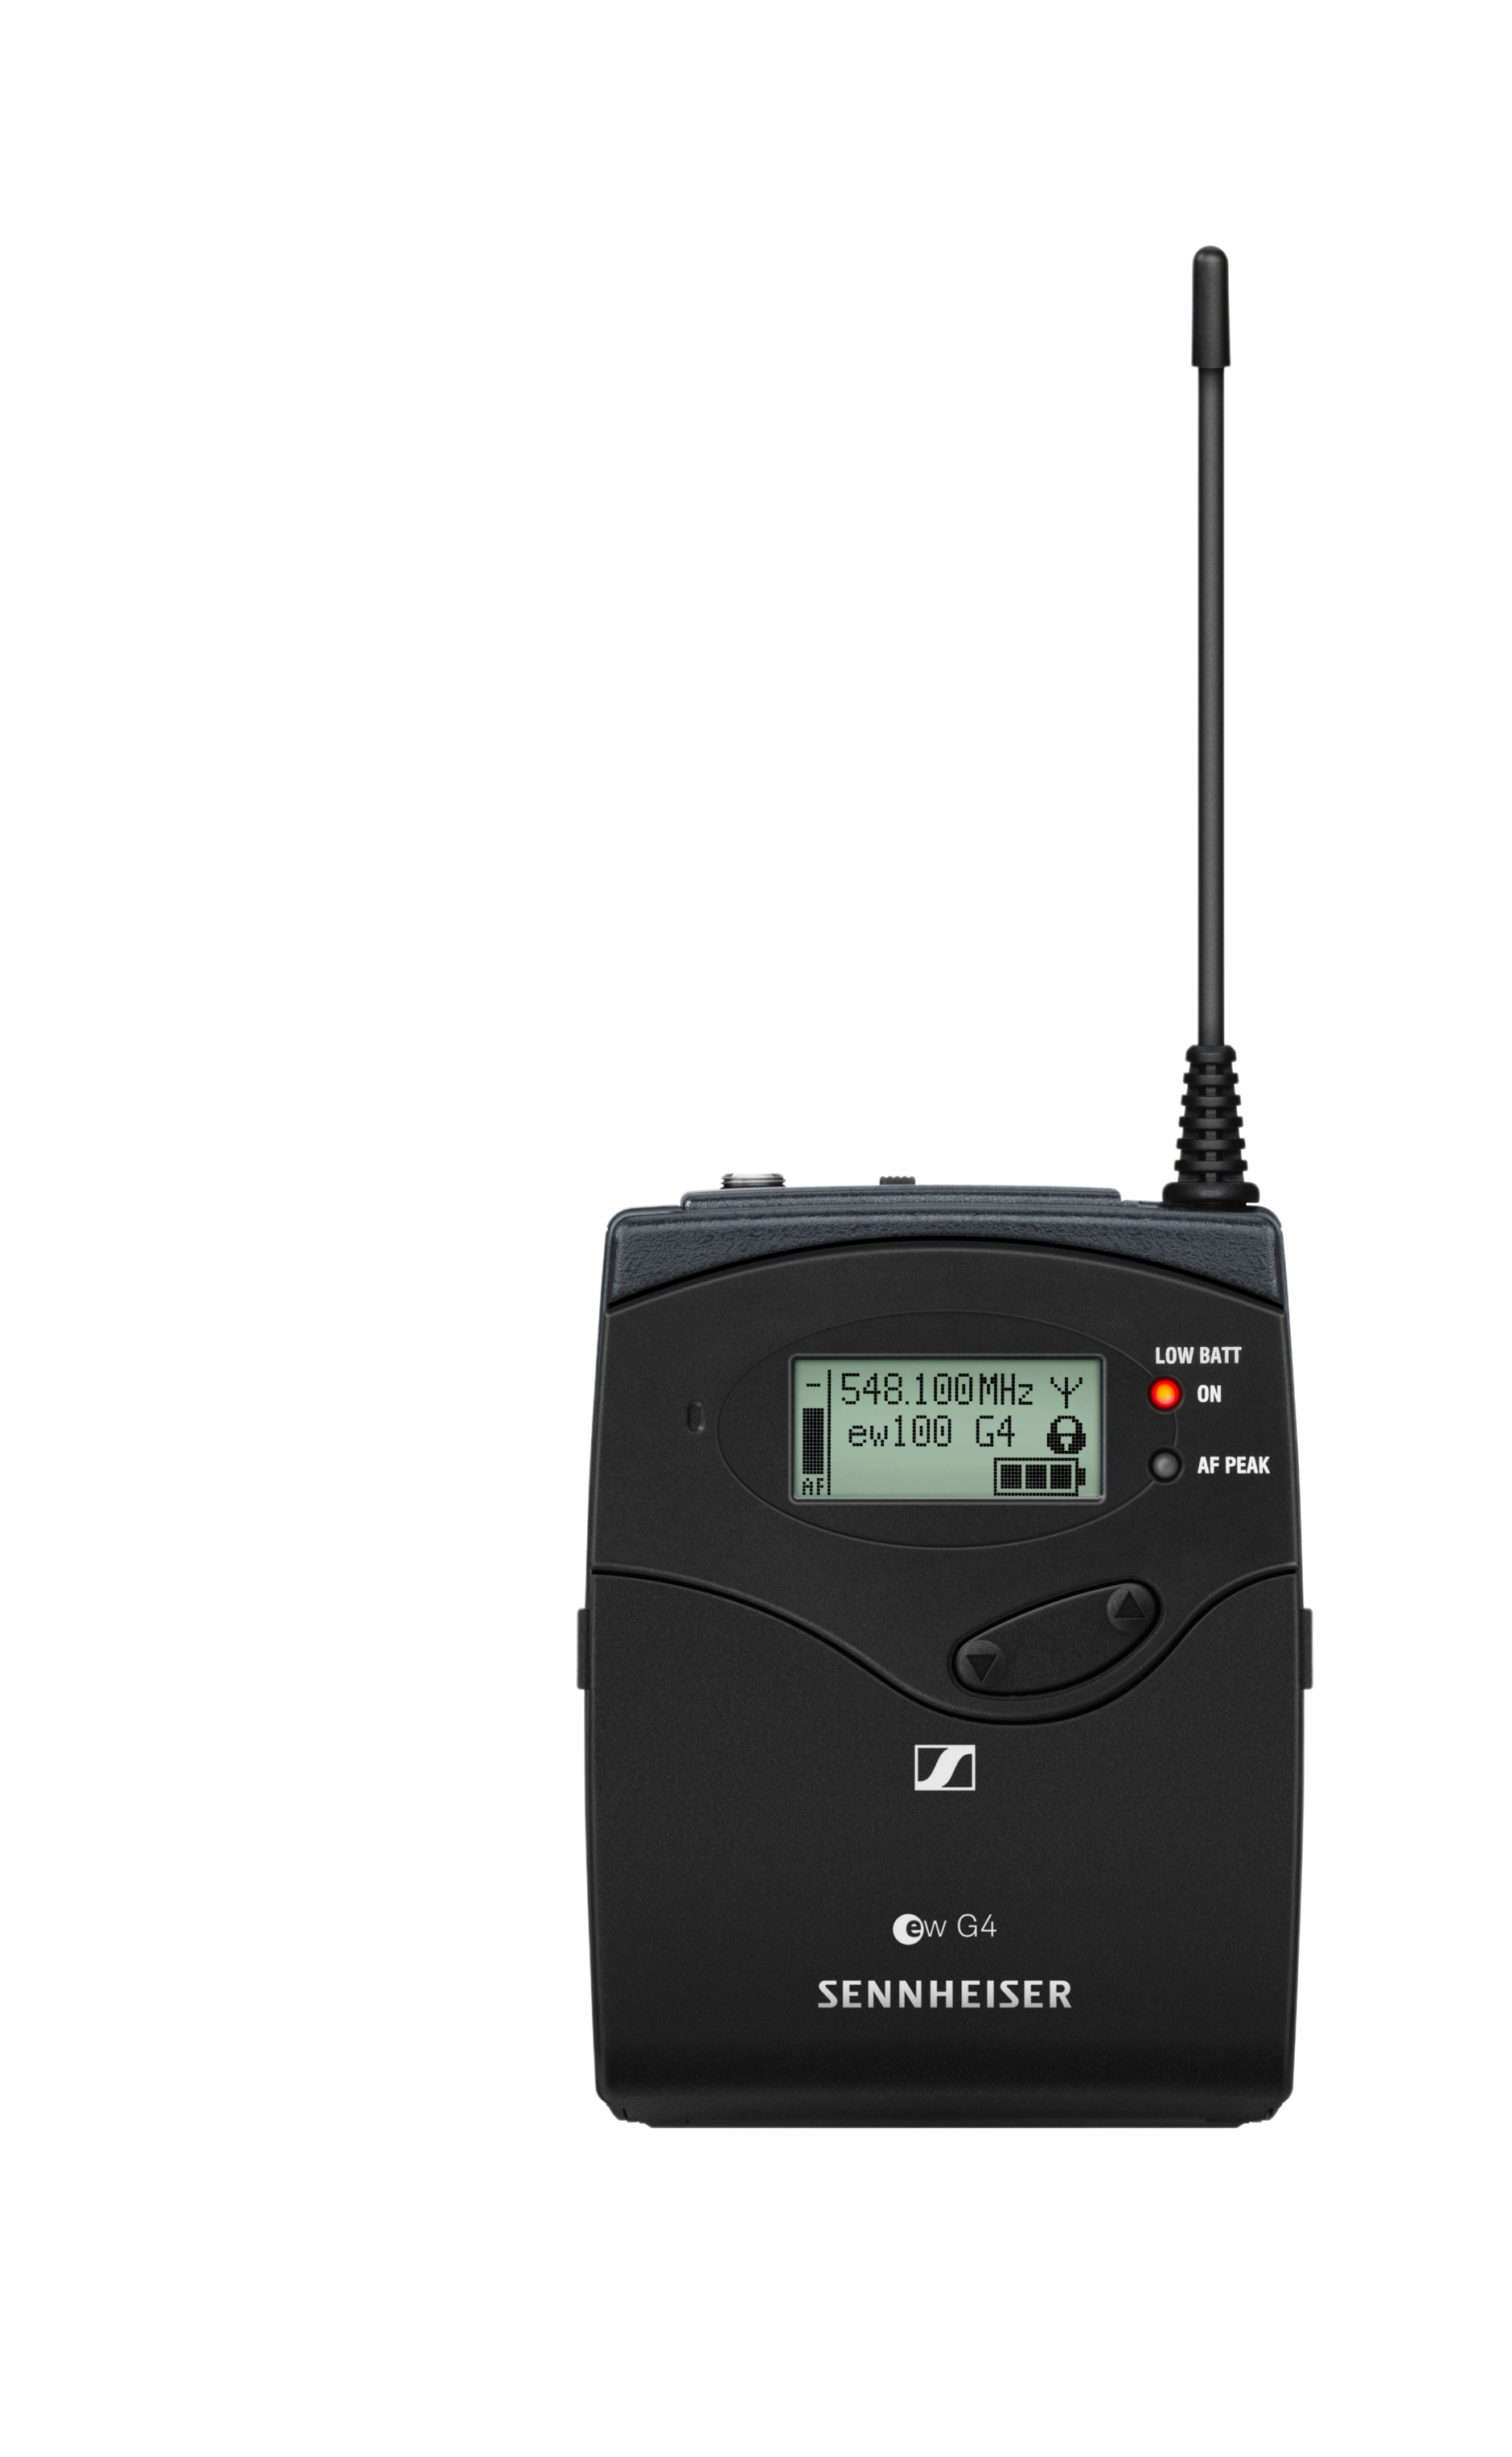 Wireless bodypack transmitter SK 100 G4